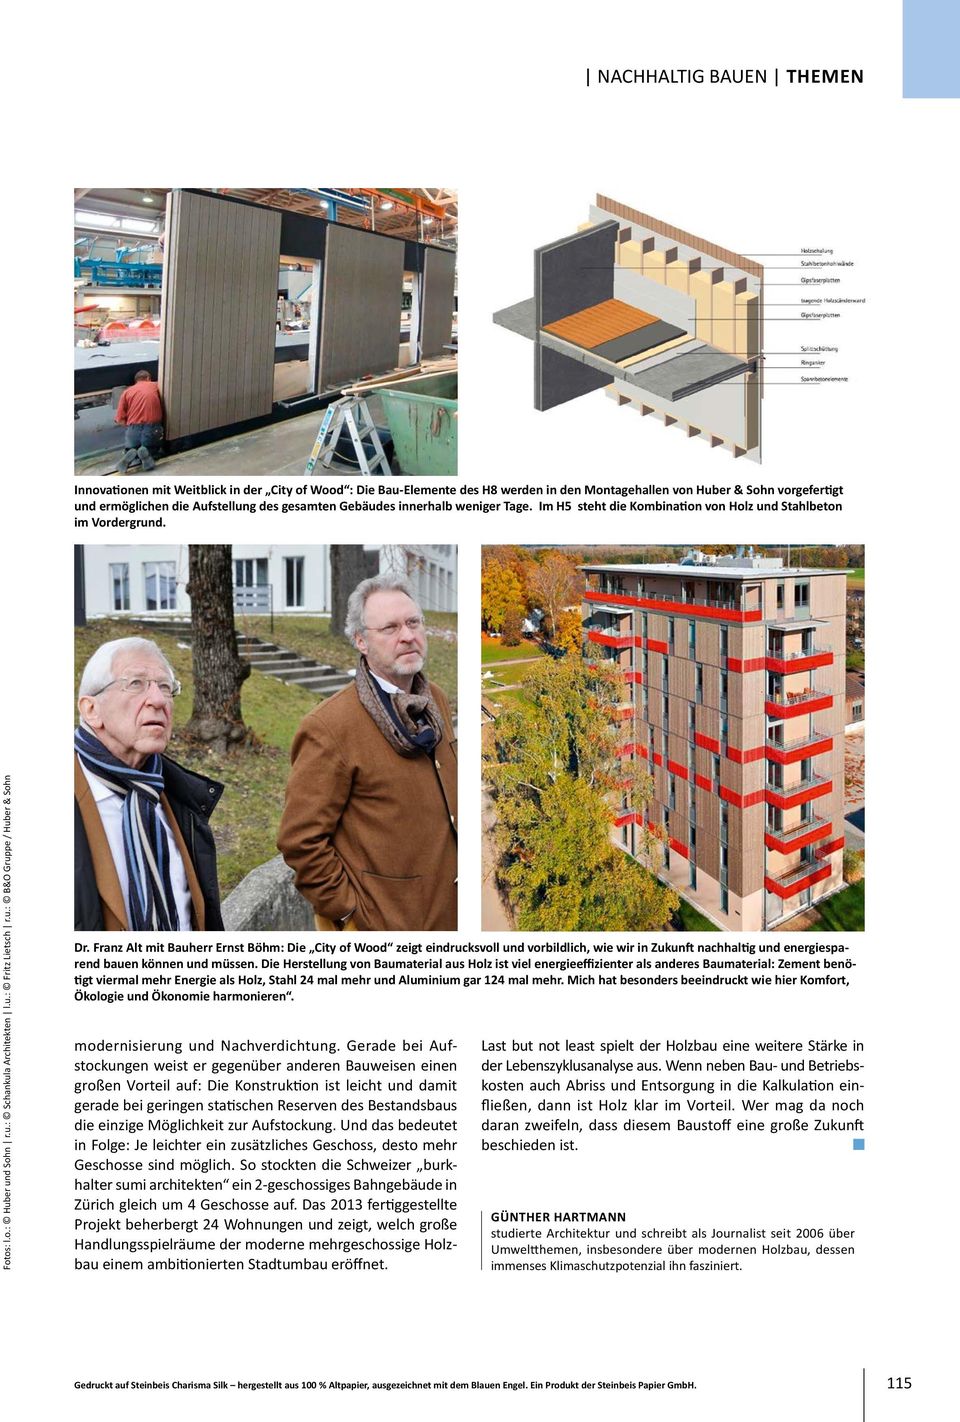 Franz Alt mit Bauherr Ernst Böhm: Die City of Wood zeigt eindrucksvoll und vorbildlich, wie wir in Zukunft nachhaltig und energiesparend bauen können und müssen.